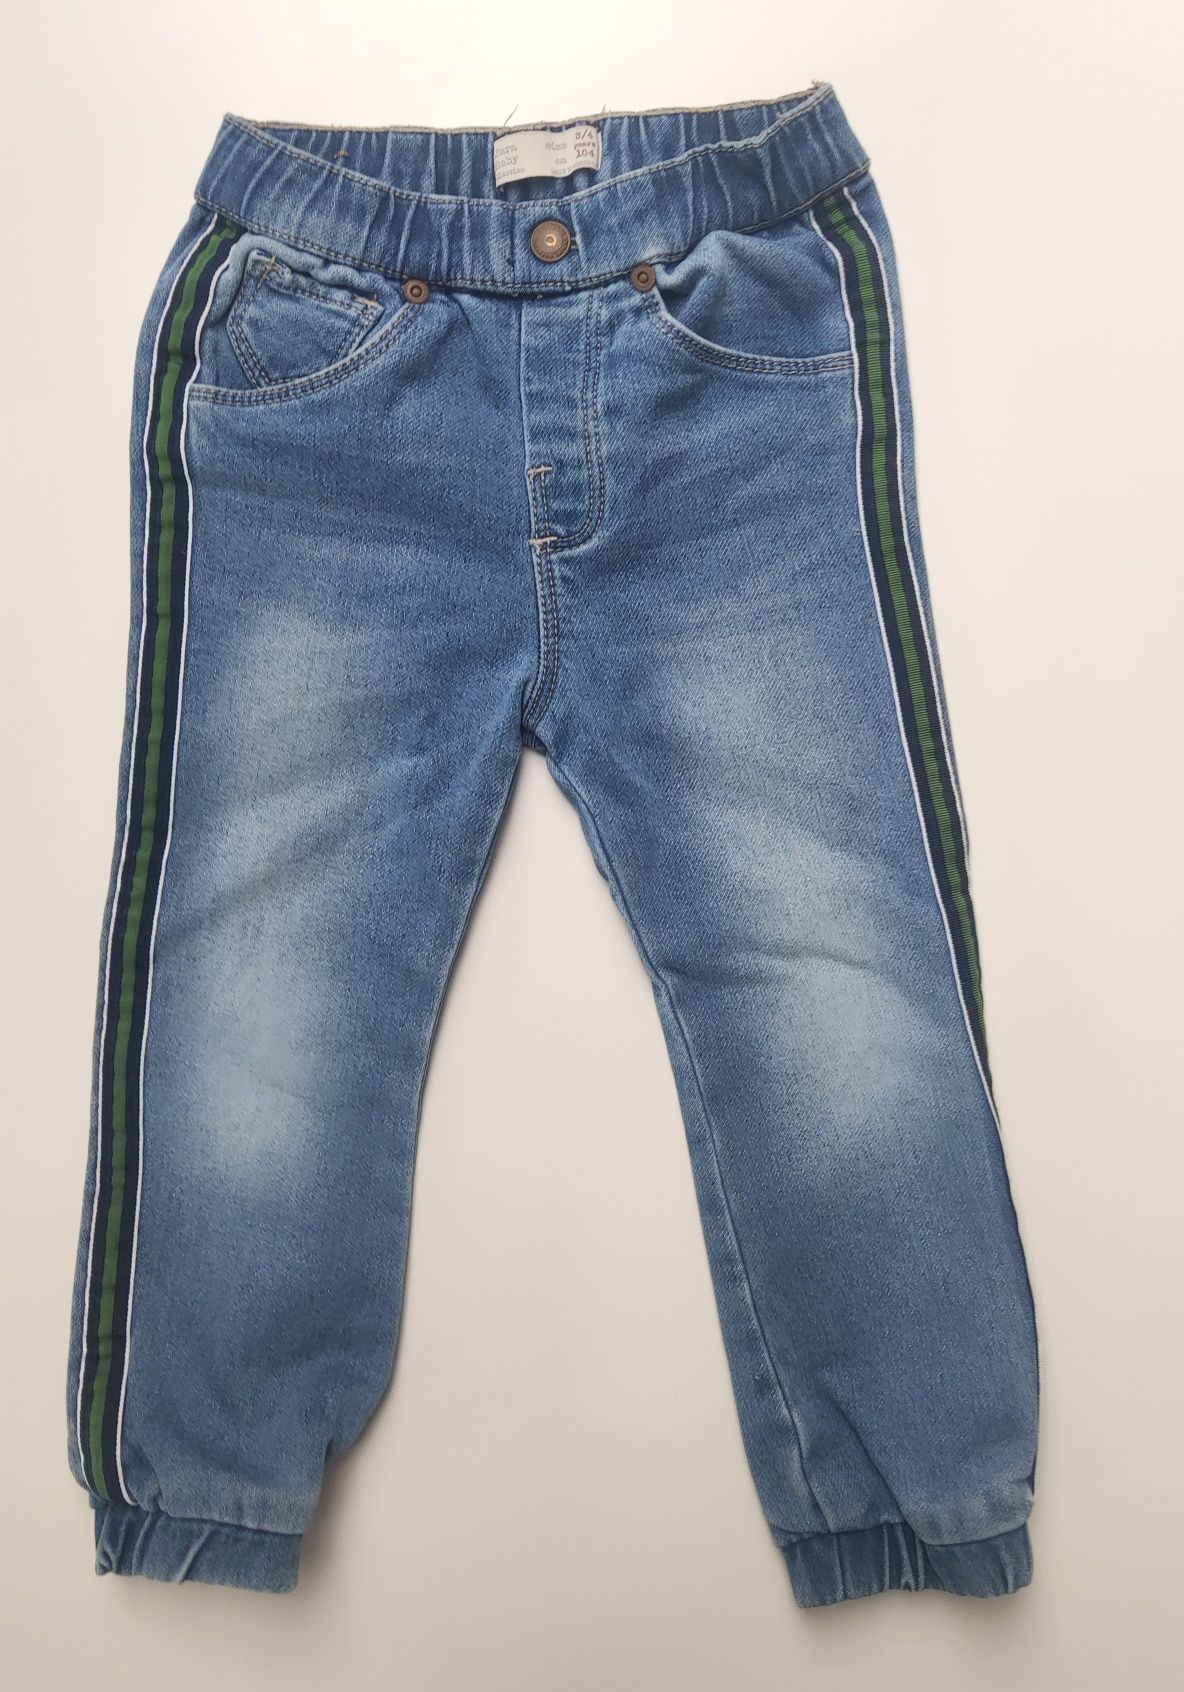 Spodnie, jeansy, Zara, 104, dla chłopca